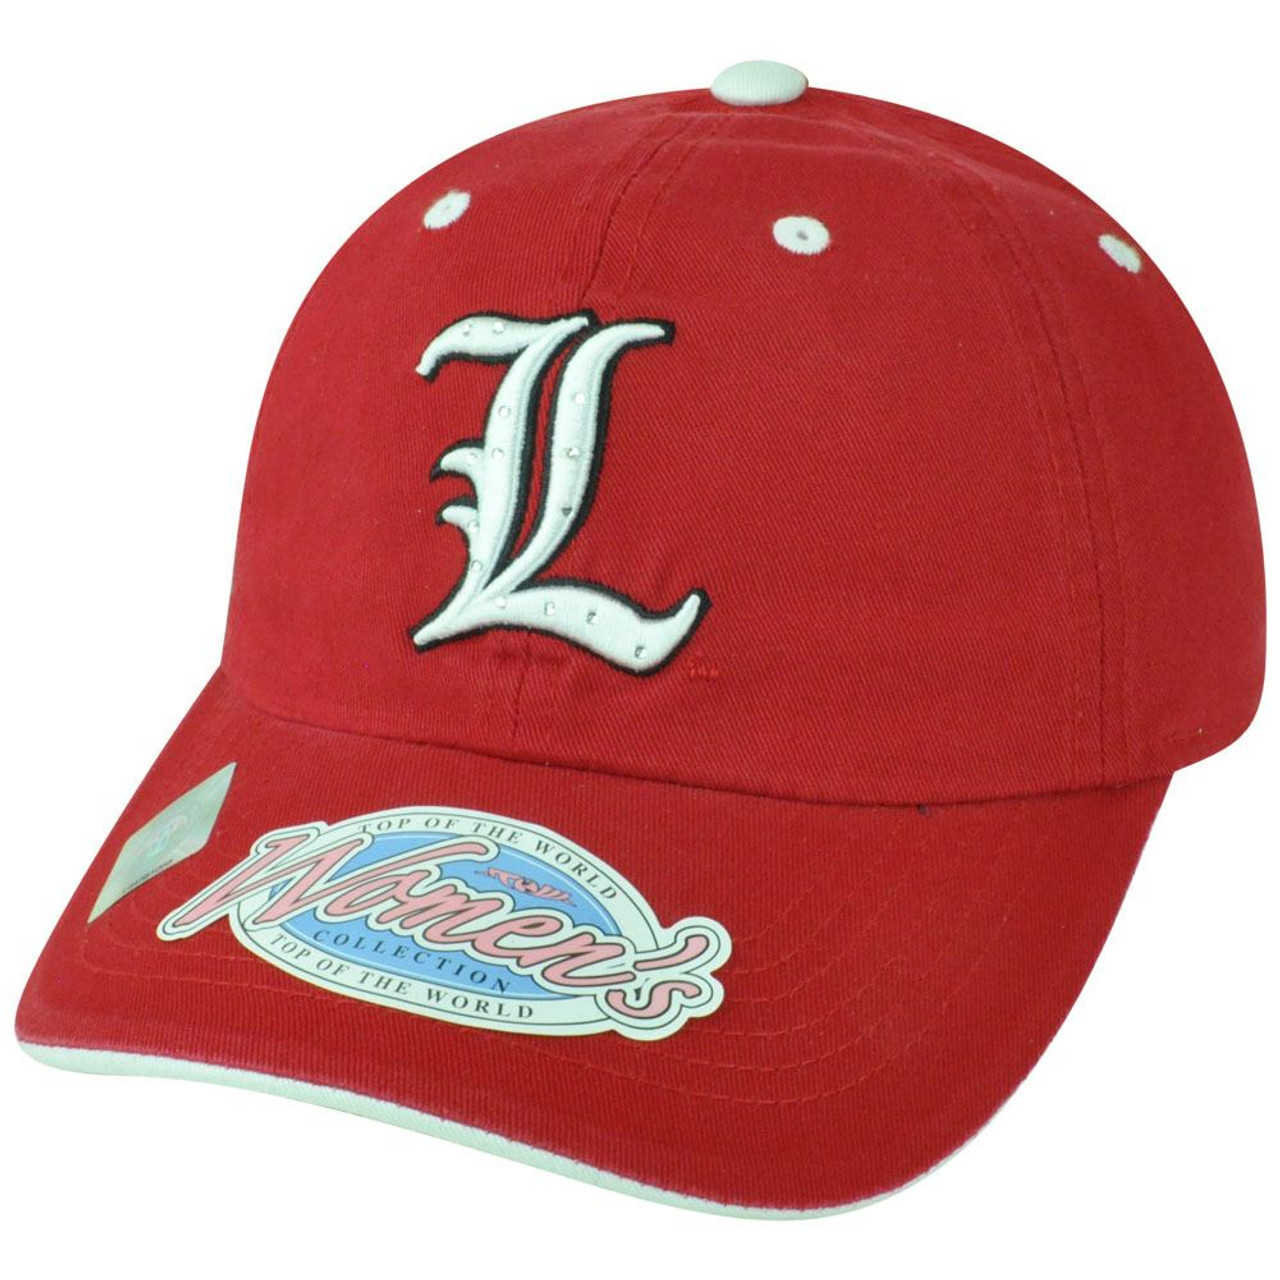 Women's Louisville Cardinals Baseball Caps